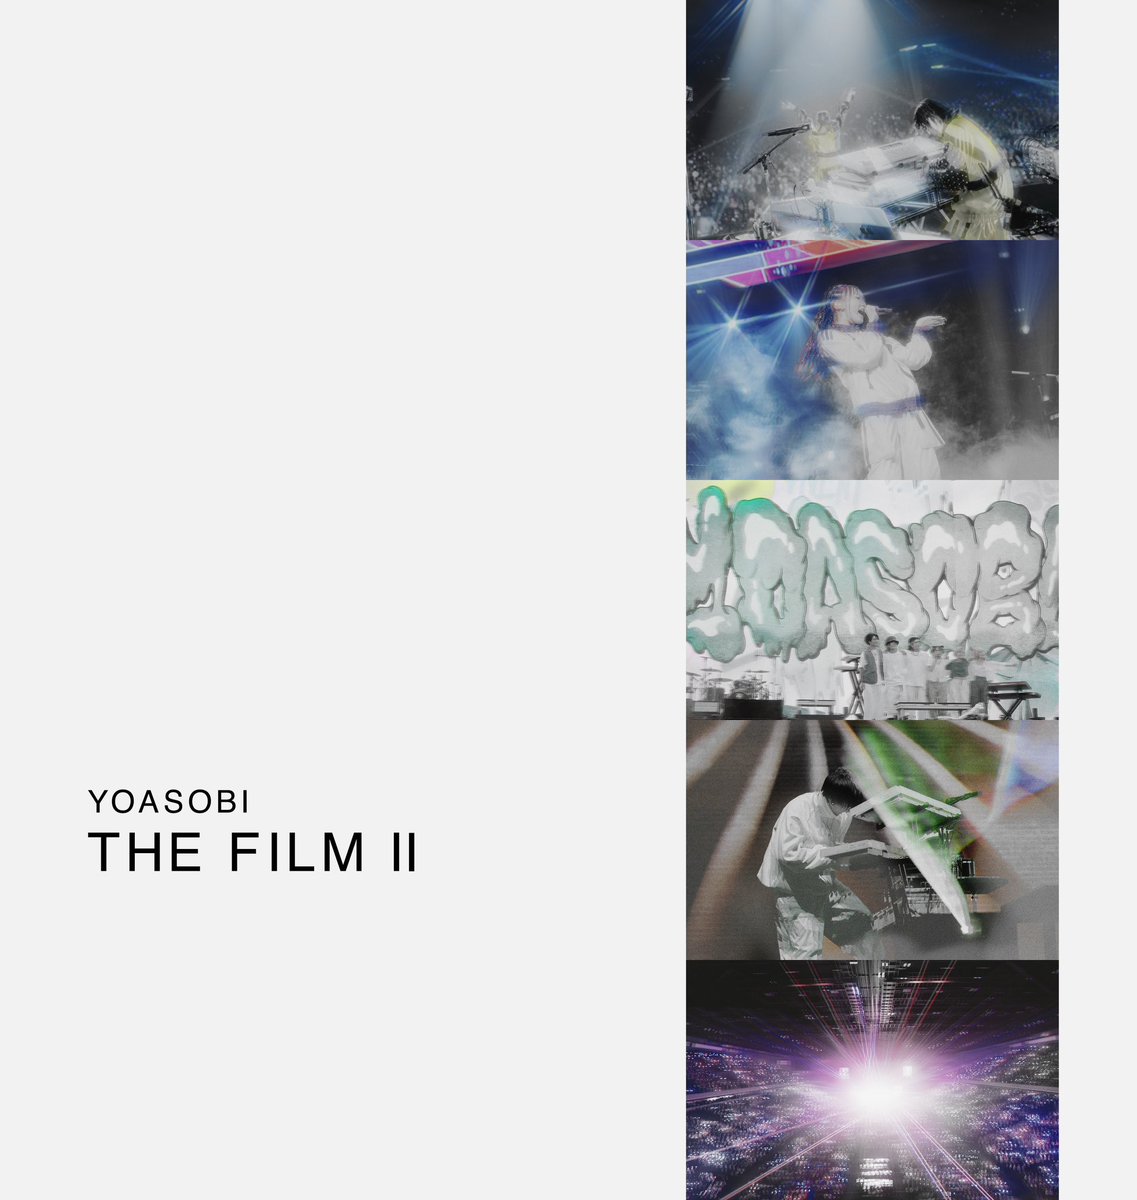 🆕ライブ映像作品集 #THEFILM2 4月10日(水)リリース📢 おなじみバインダー仕様に #YOASOBI電光石火ツアー 他この1年のライブ映像やその裏側をたっぷり収録！前作同様写真もギッシリ🍙 あなたのコレクションにぜひ加えてもらえたら嬉しいです🤝 yoasobi.lnk.to/thefilm2 ※ジャケットは仮です🙇